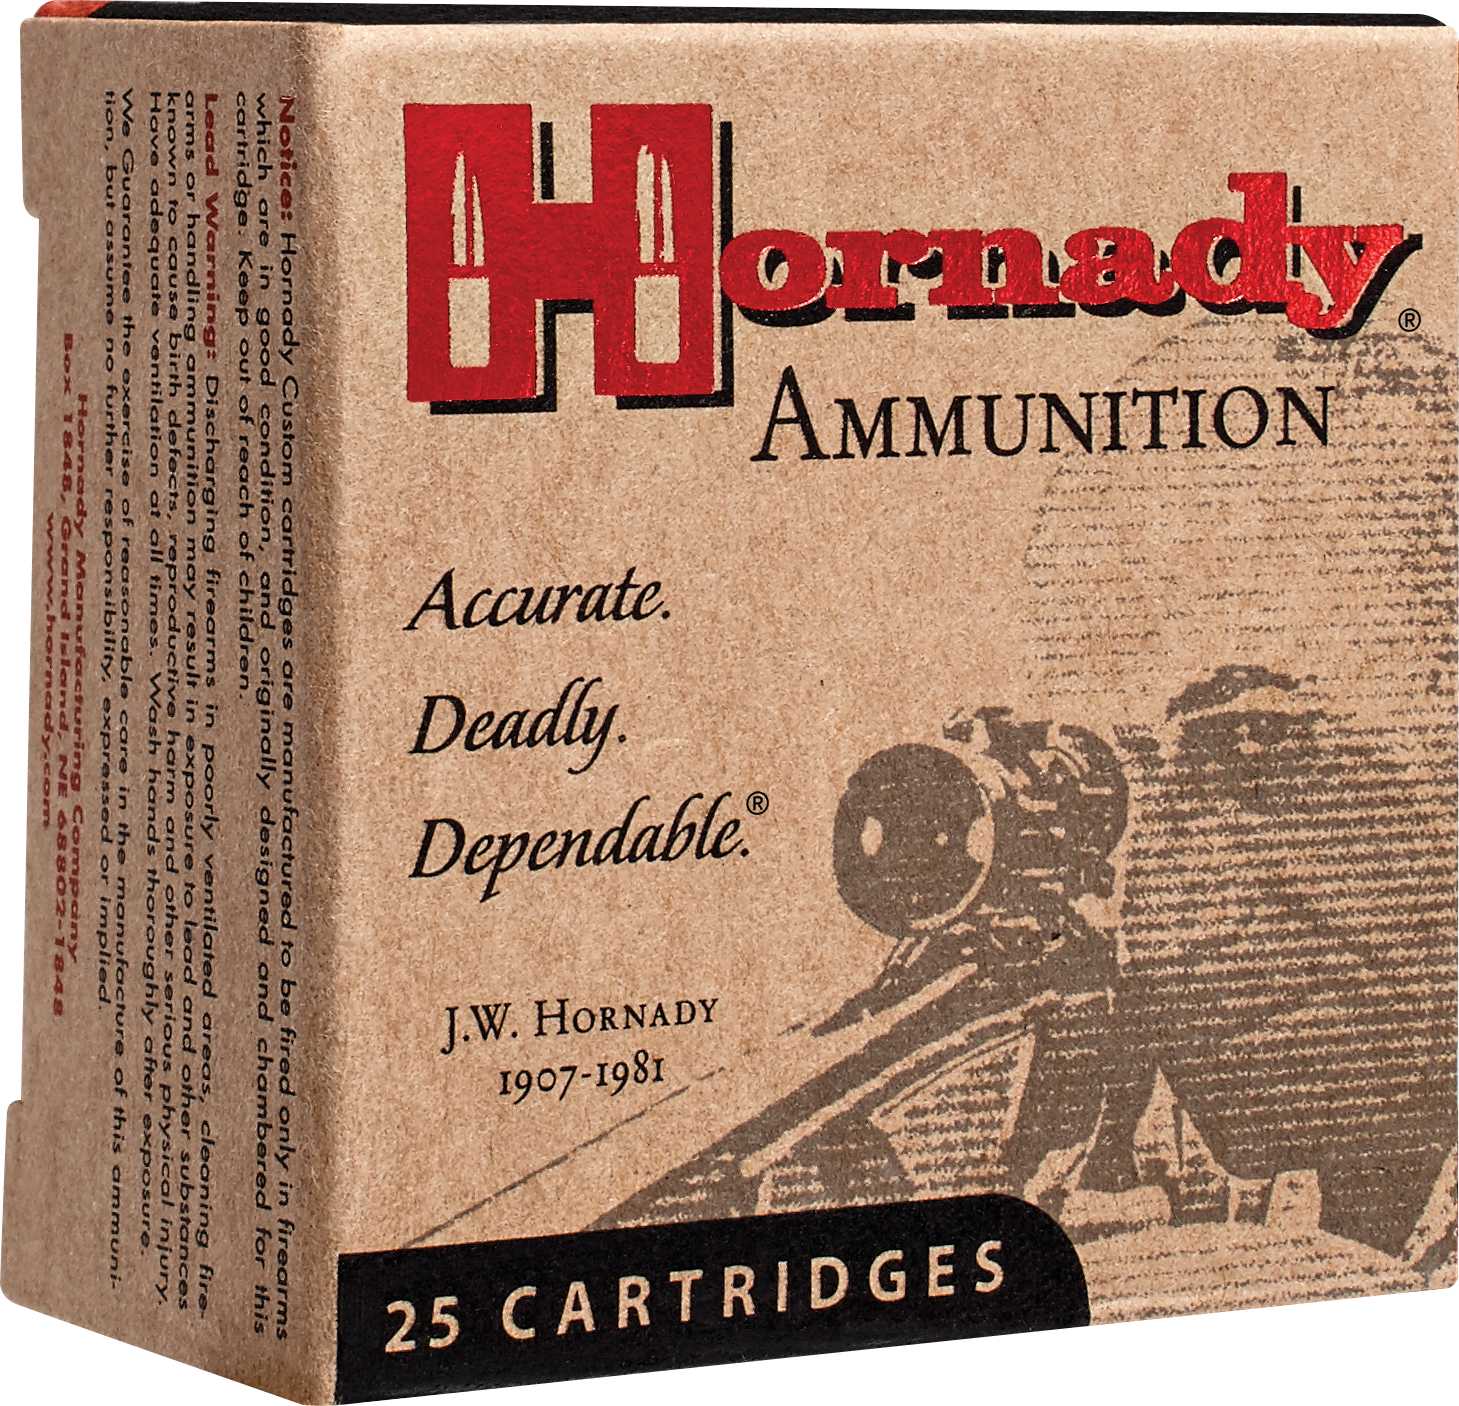 357 Magnum 25 Rounds Ammunition Hornady 158 Grain Hollow Point